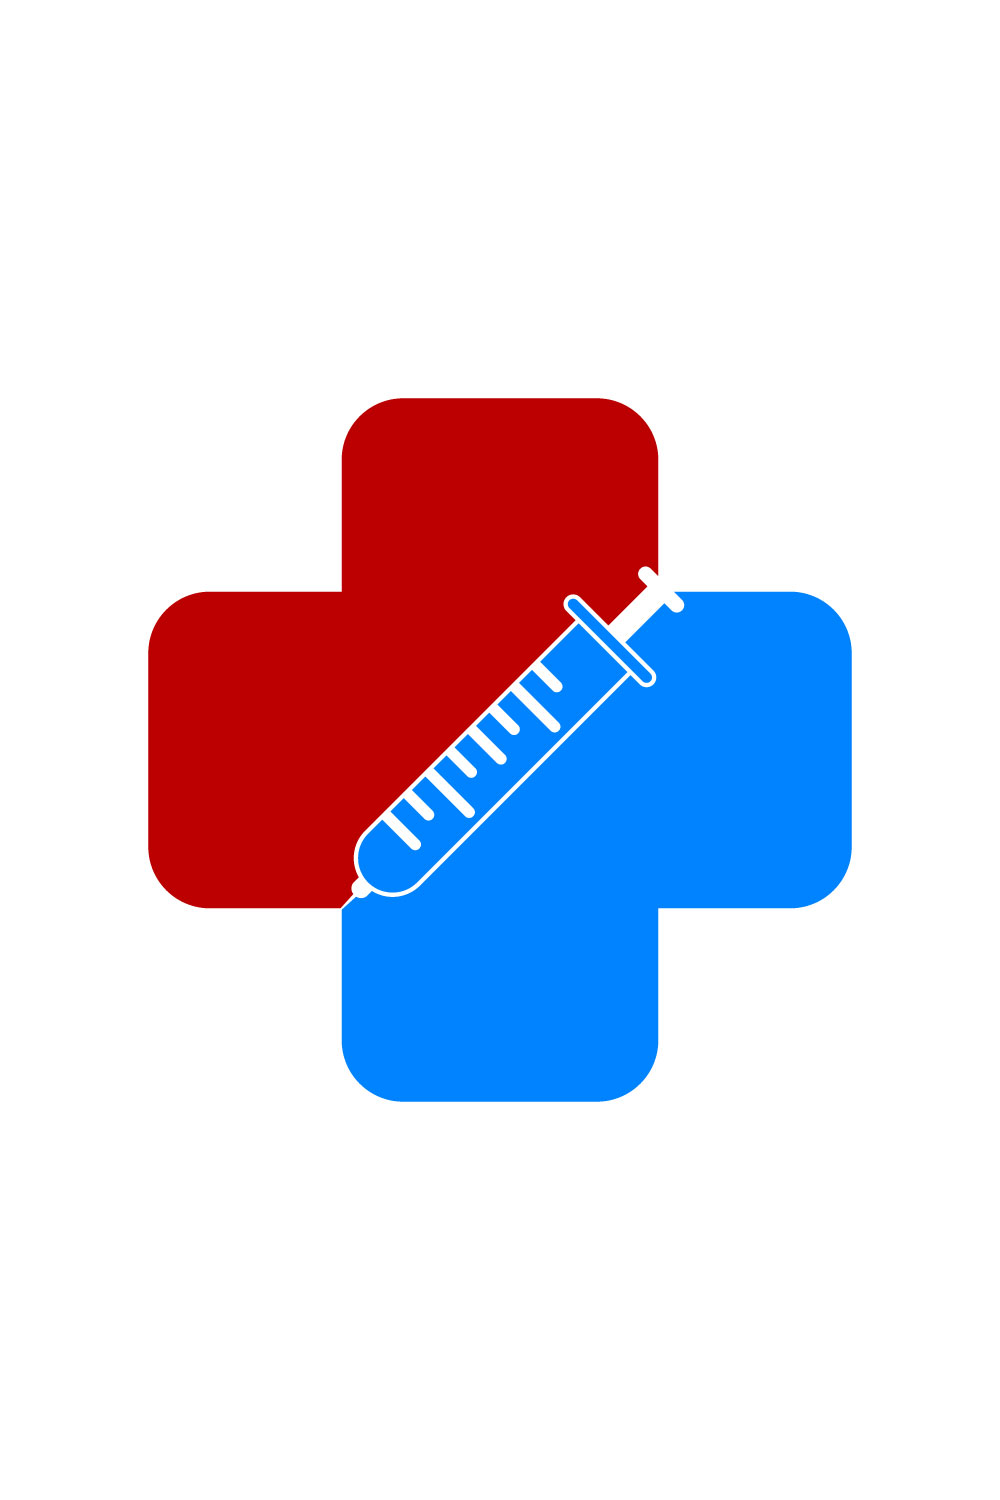 Medical Syringe Injection Logo design Concept, Vector illustration pinterest preview image.